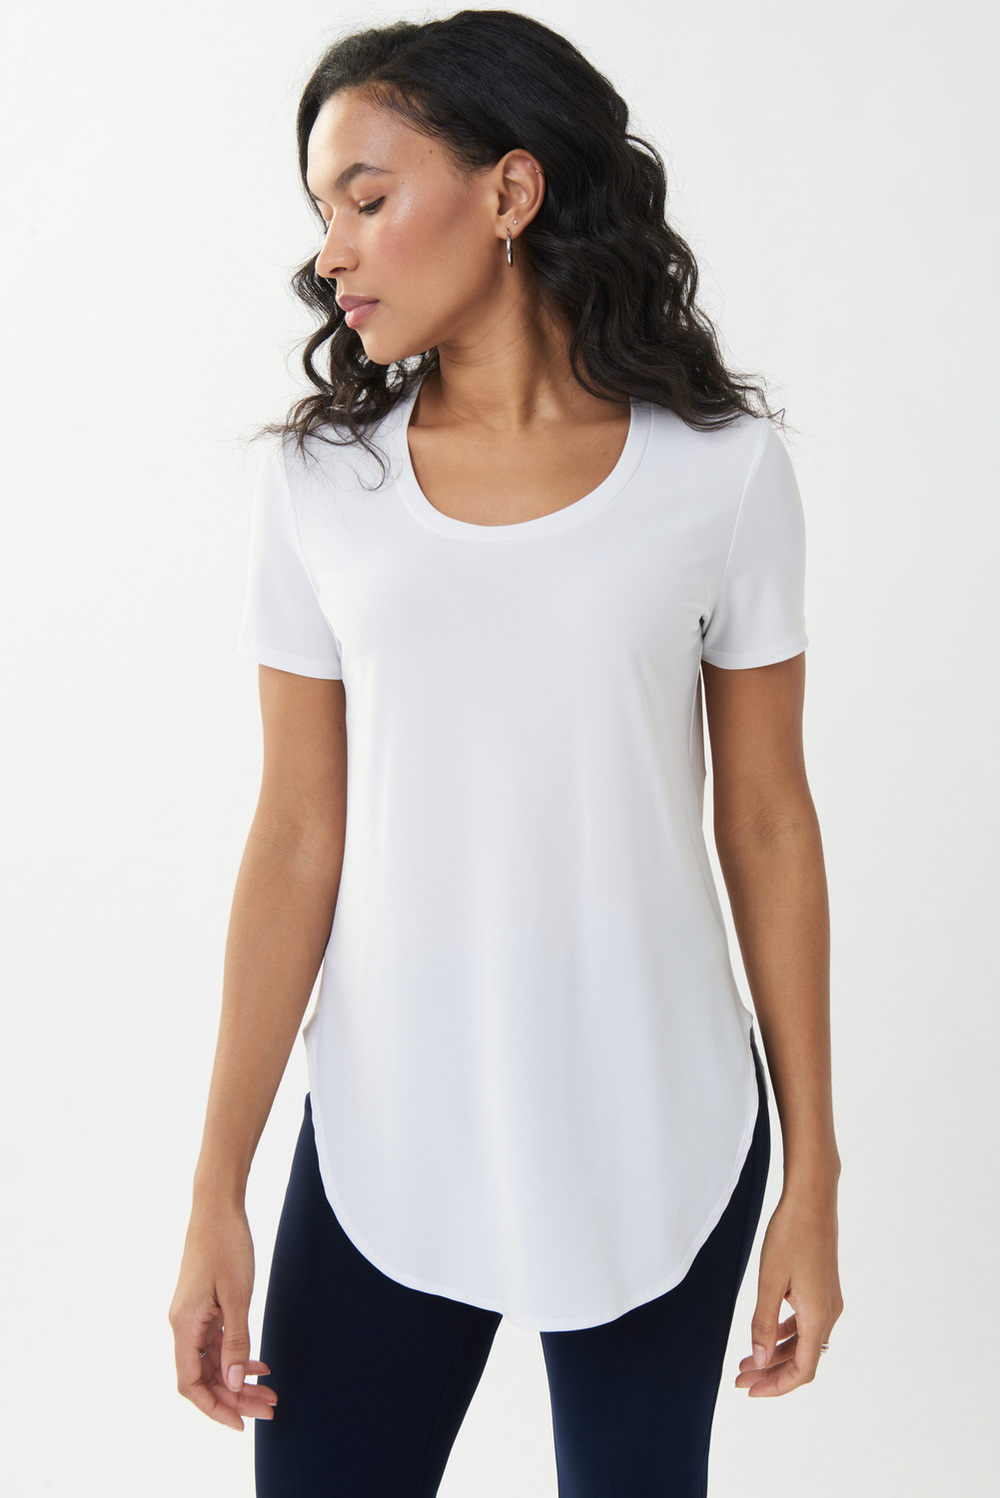 T-shirt long, bas arrondi modèle 183220S24. Blanc